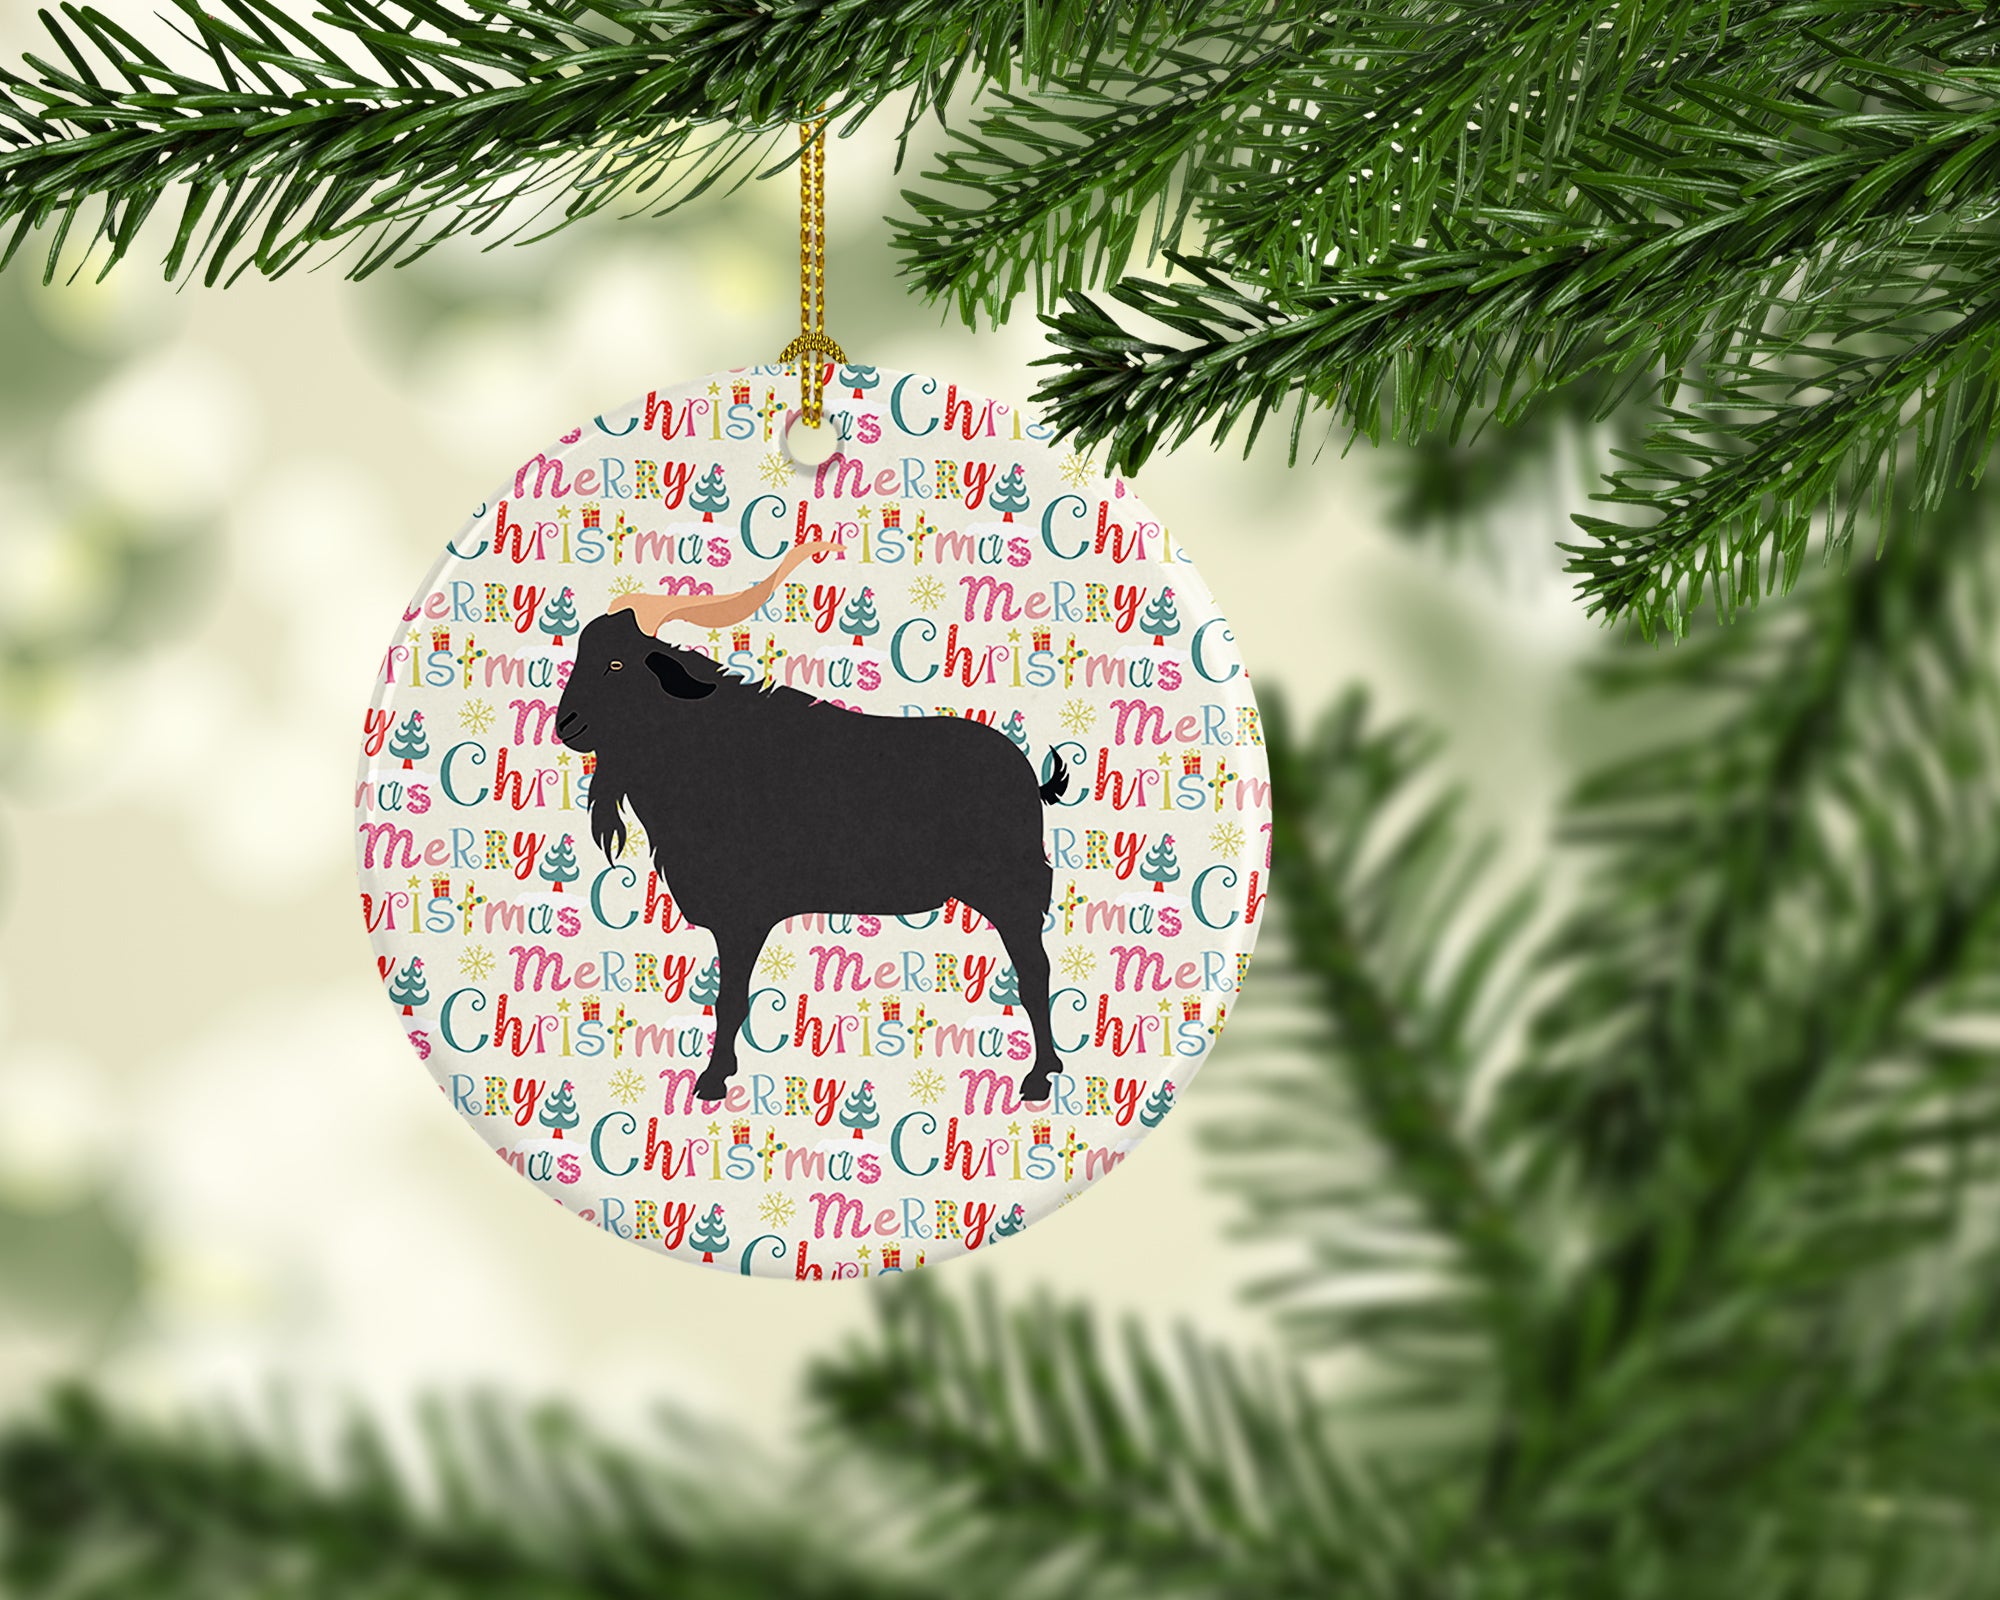 Buy this Verata Goat Christmas Ceramic Ornament